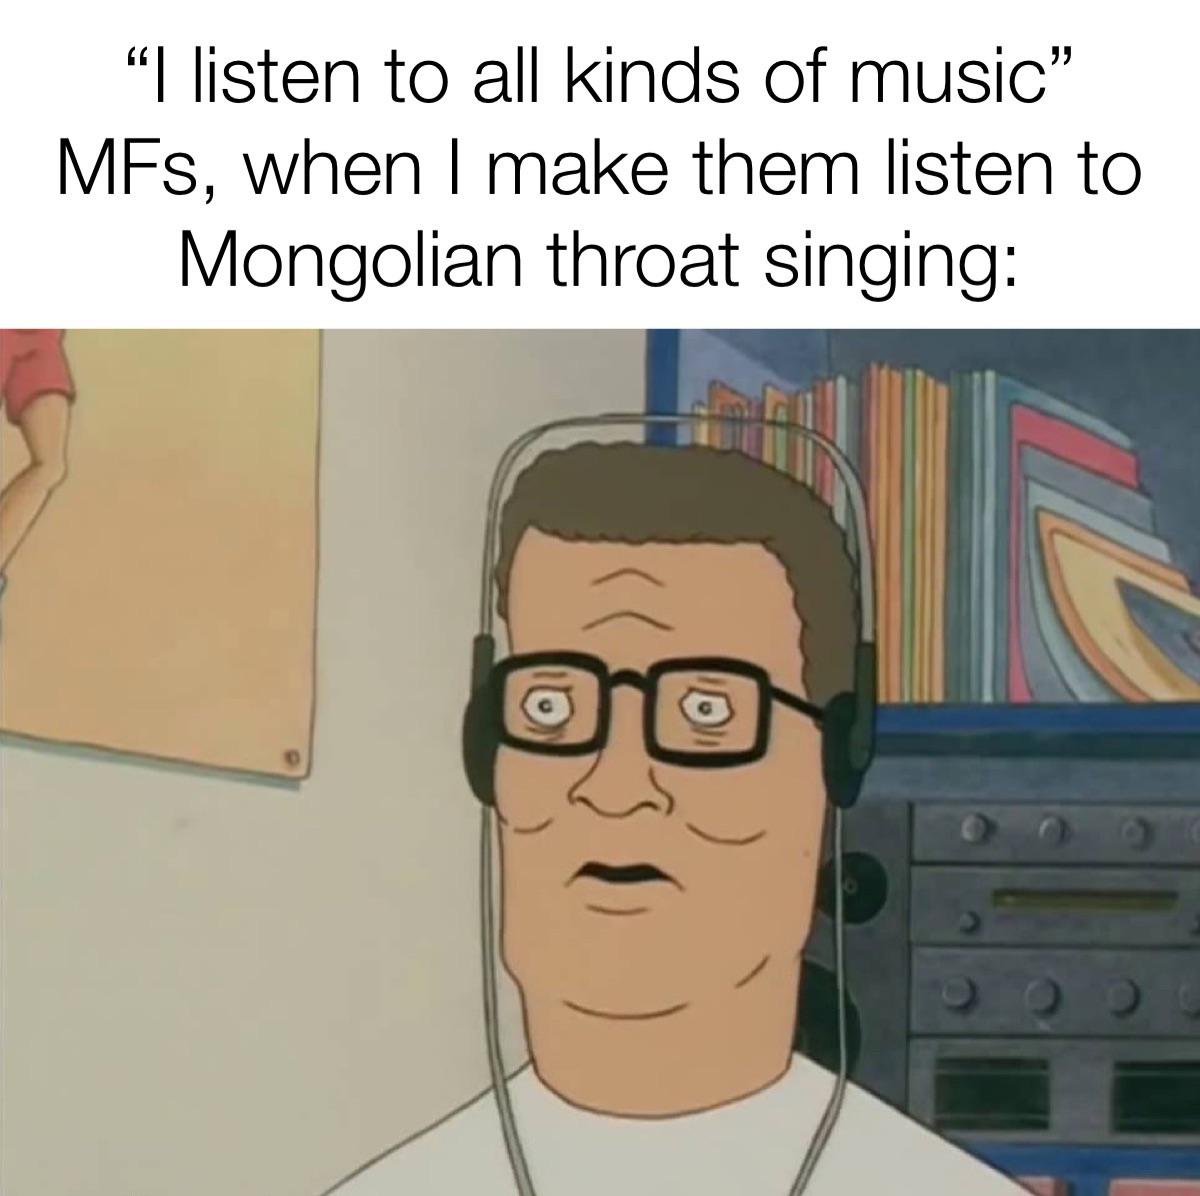 funny memes - Internet meme - "I listen to all kinds of music" MFs, when I make them listen to Mongolian throat singing